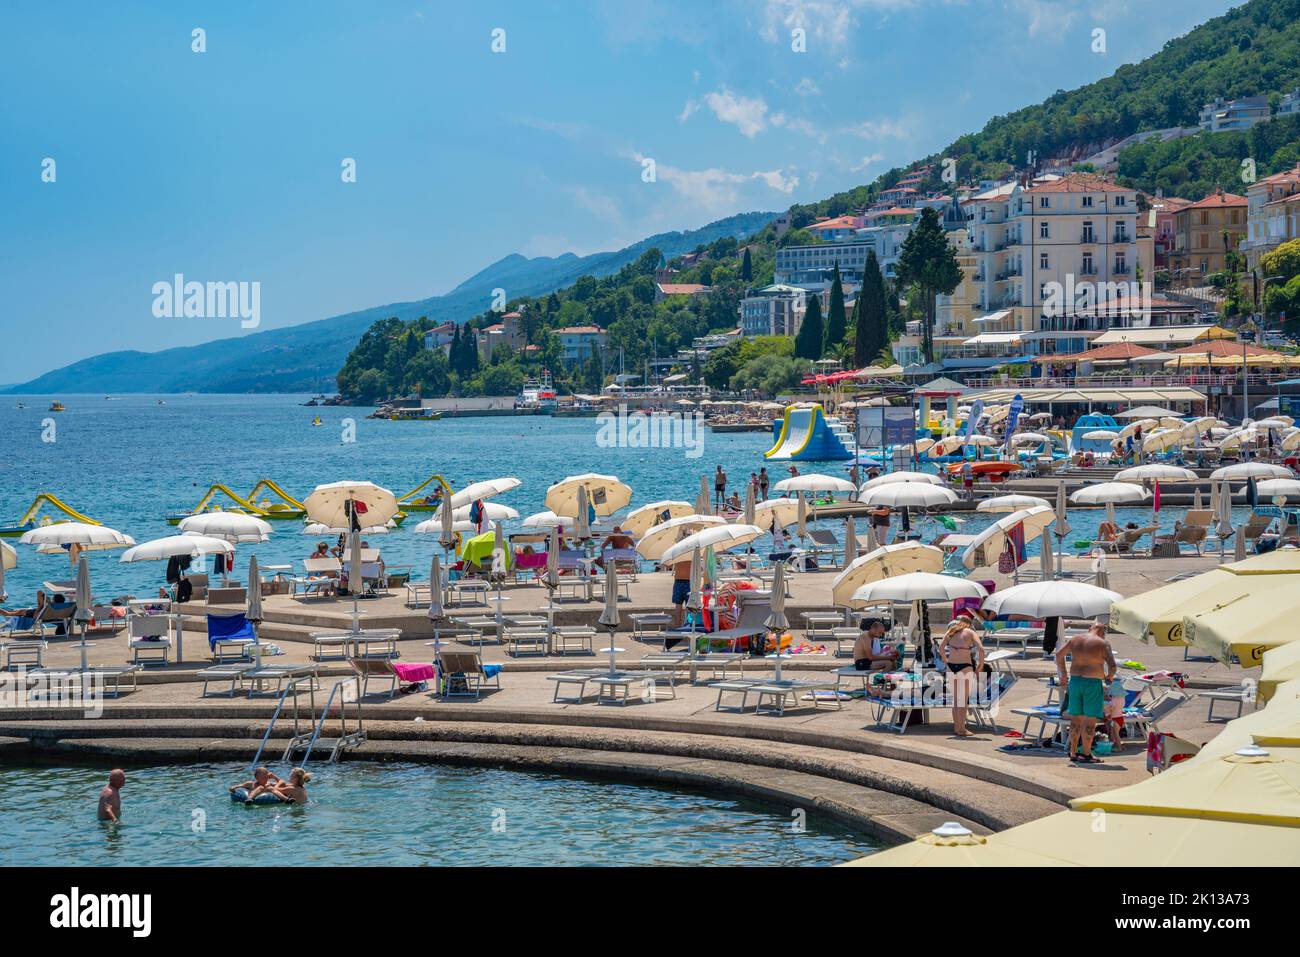 Vue sur les restaurants et les parasols de la promenade Lungomare dans la ville d'Opatija, Opatija, baie de Kvarner, Croatie, Europe Banque D'Images